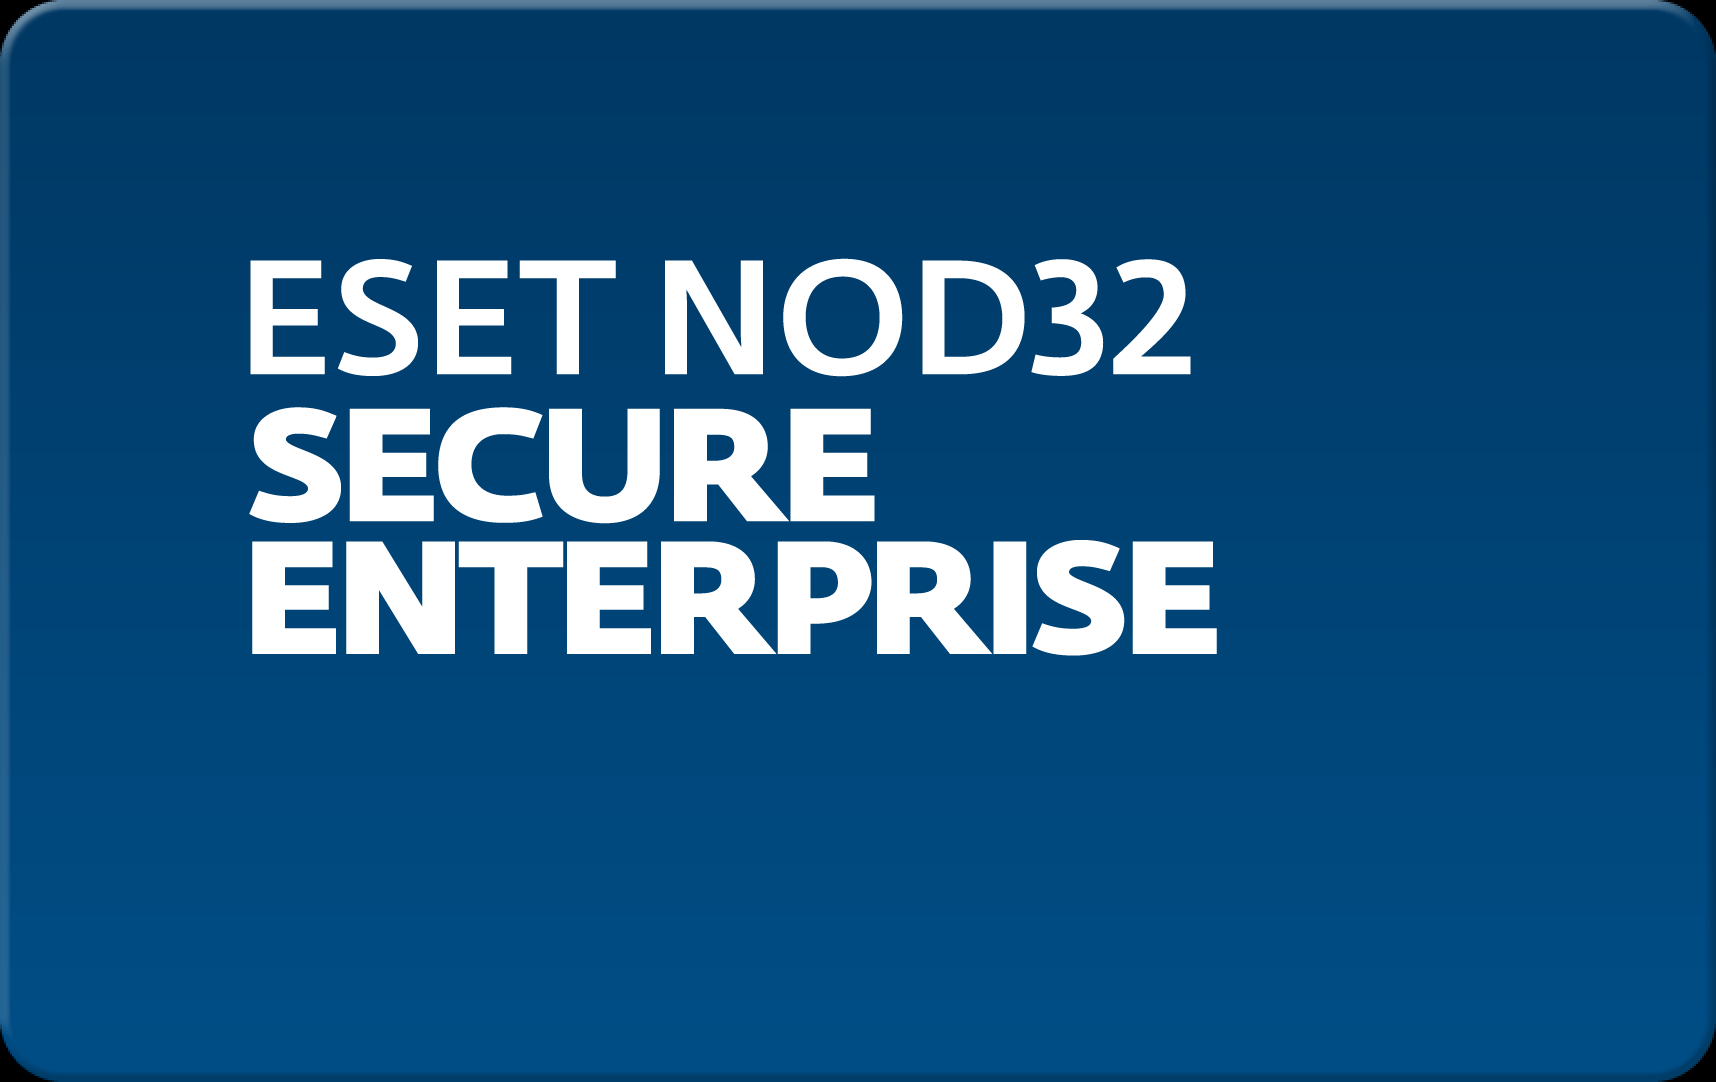        Eset NOD32 Secure Enterprise  144 